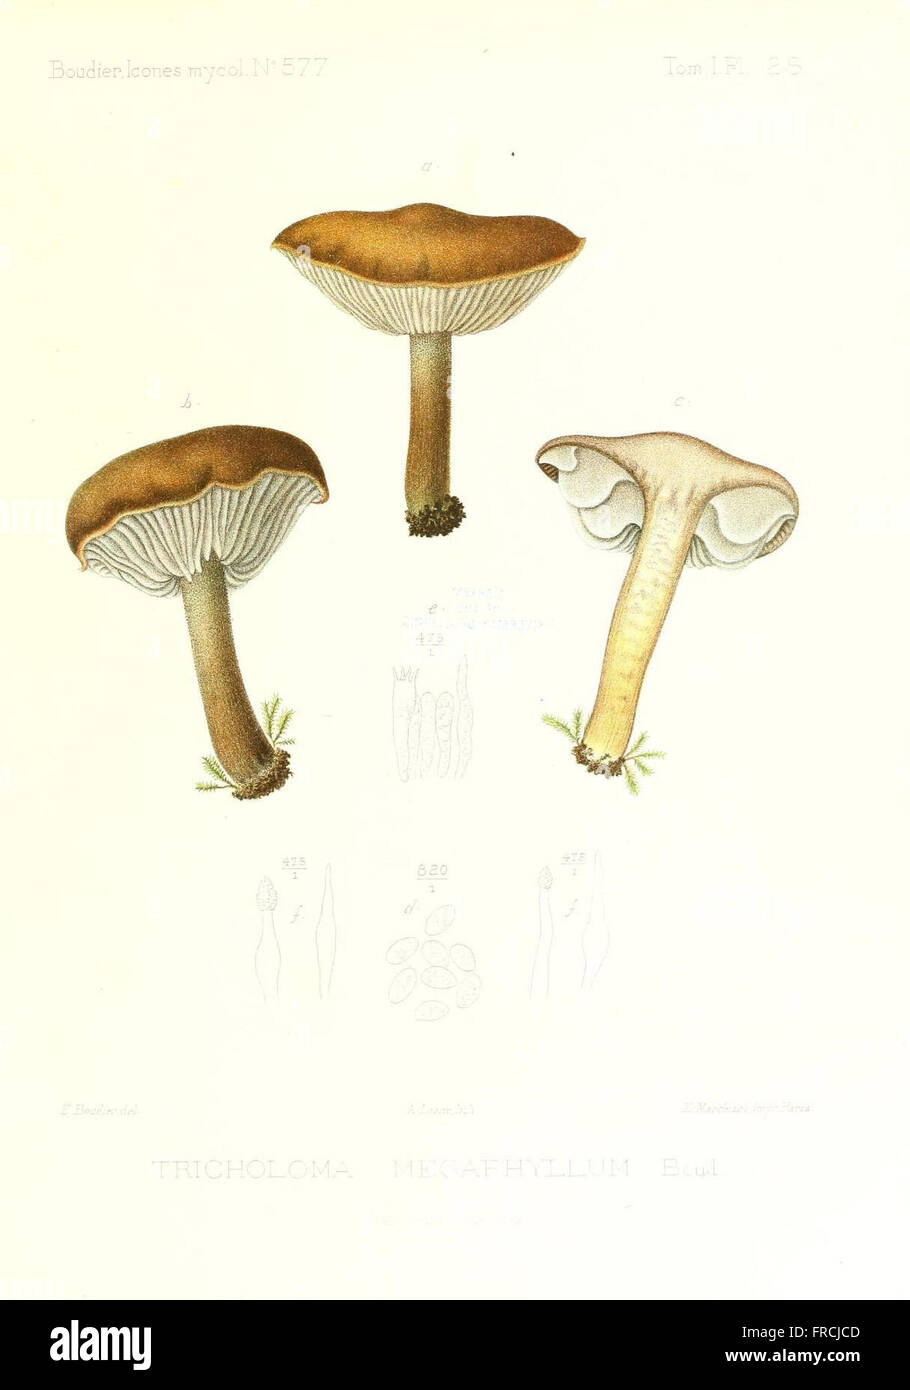 Icones mycologicC3A6, ou Iconographie des champignons de France principalement Discomycetes (Pl. 28) Stock Photo